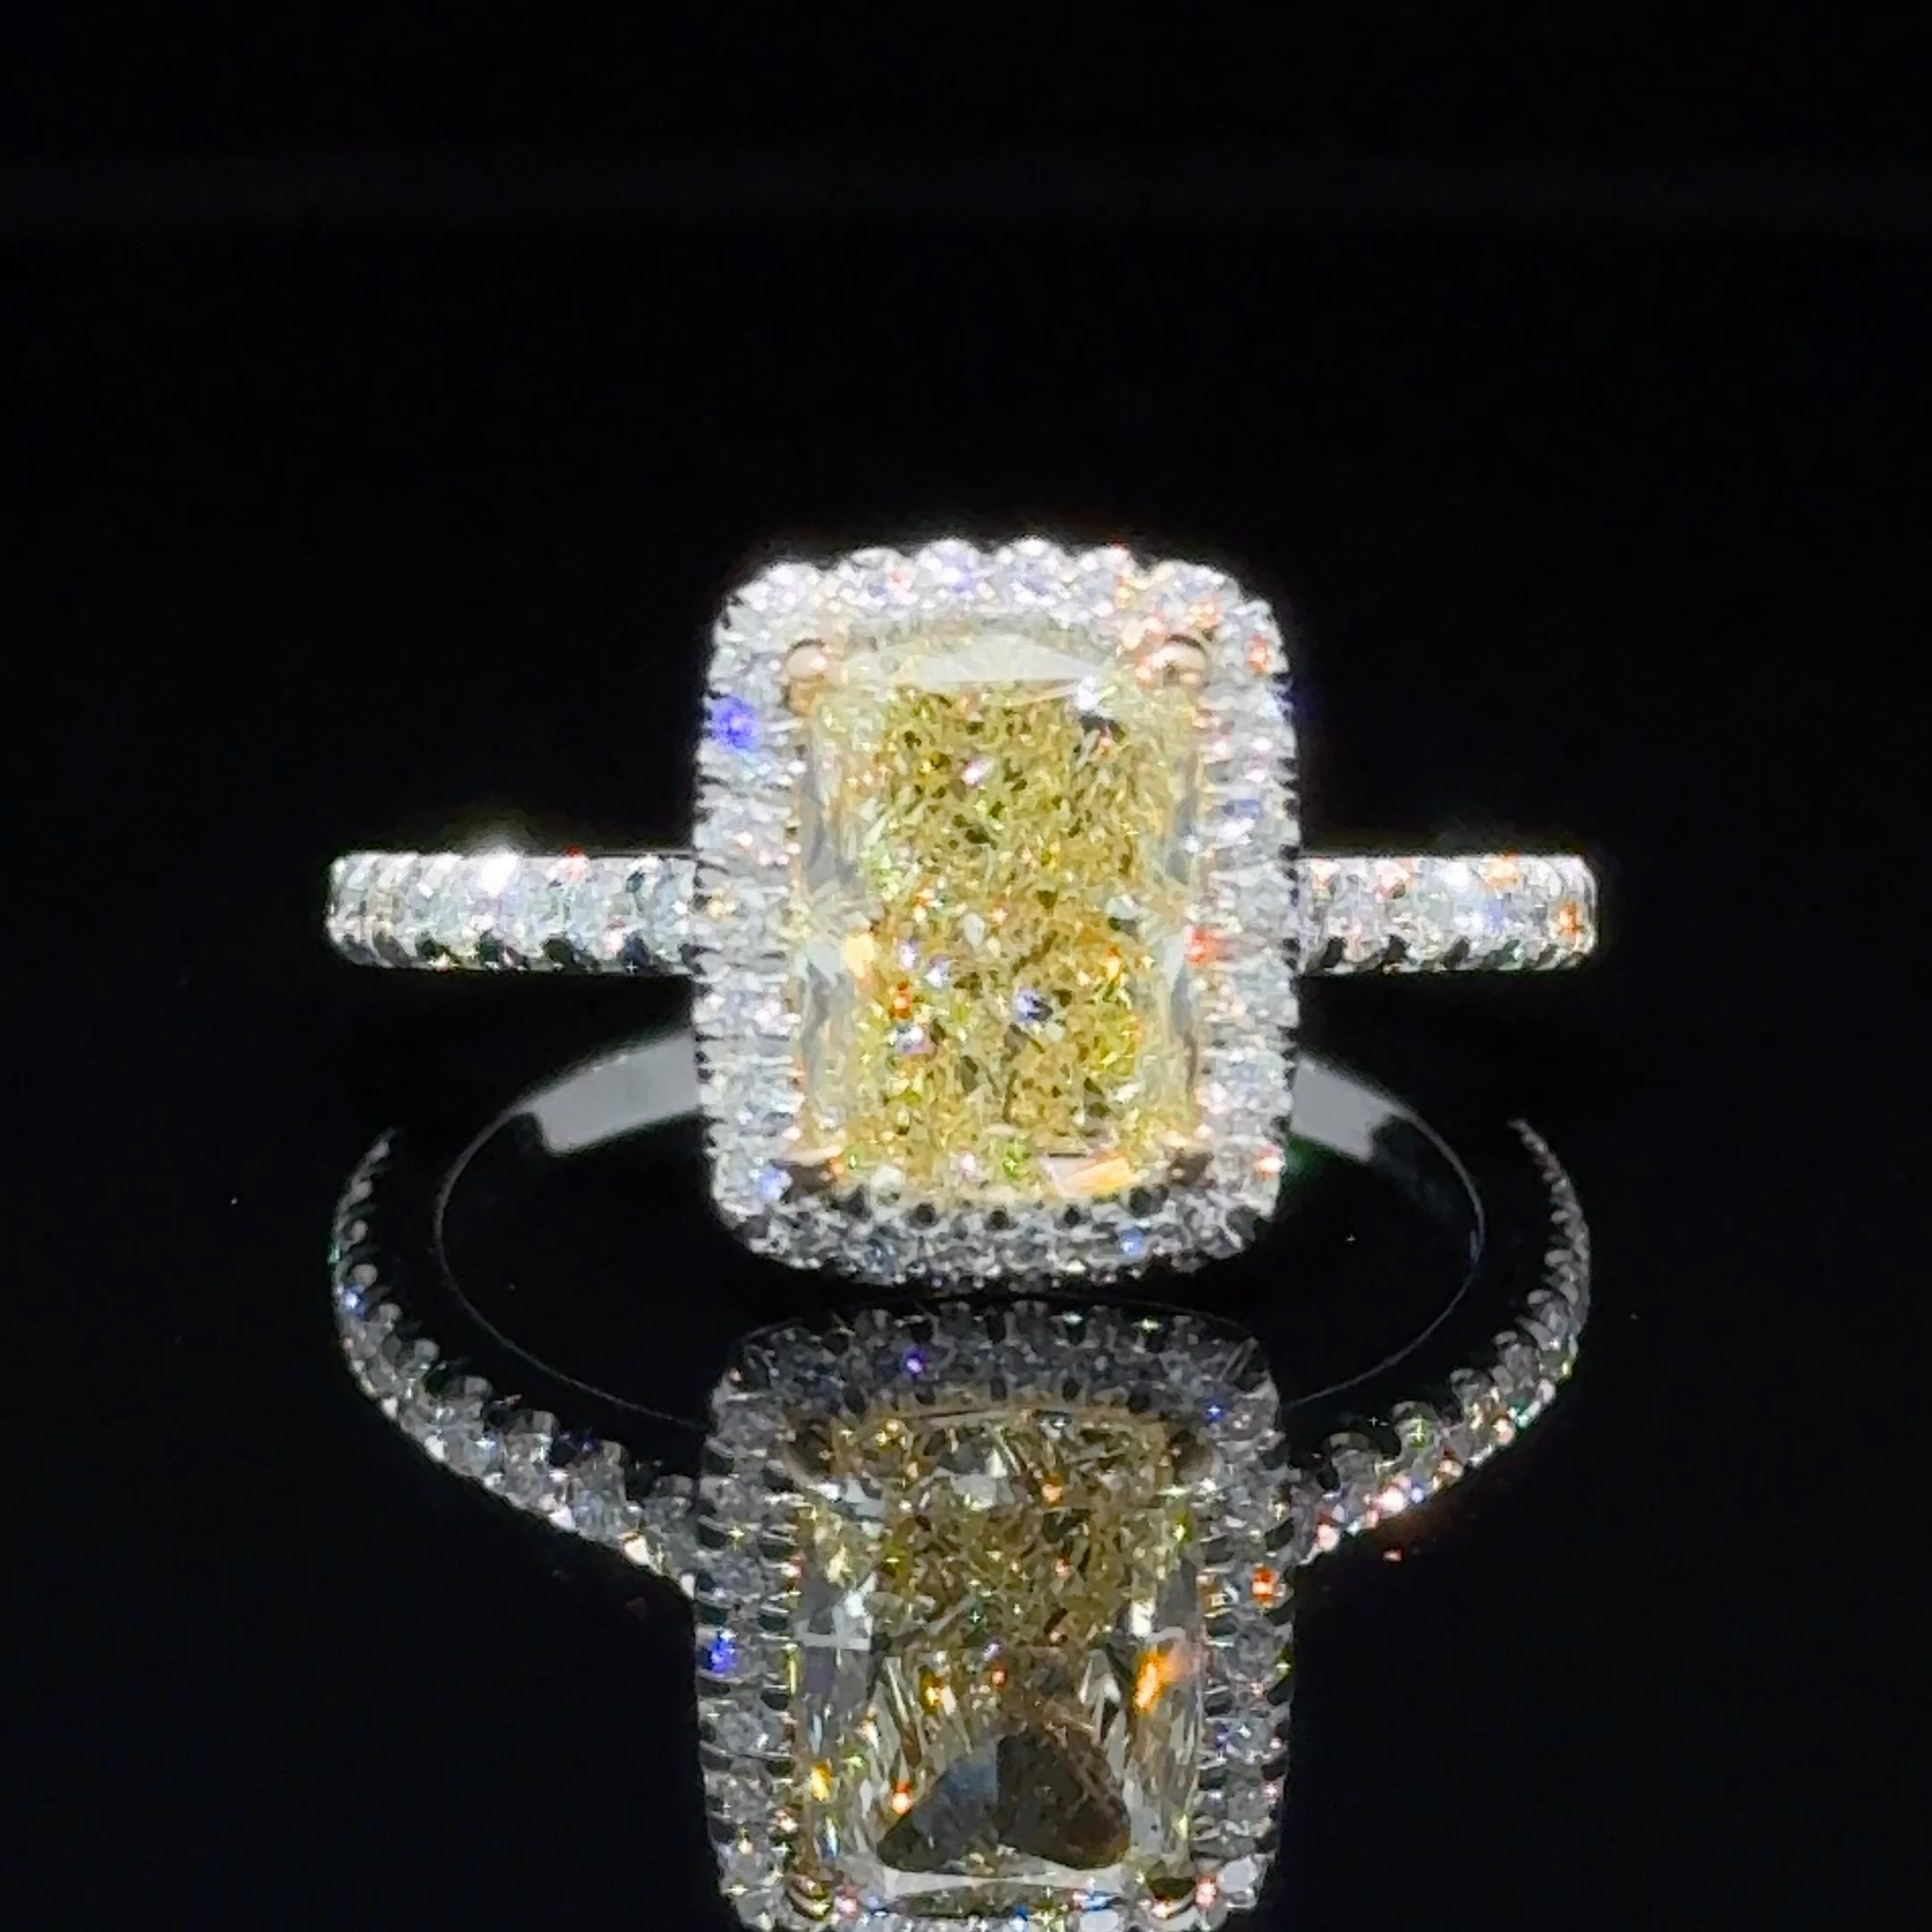 Parmi les diamants jaunes, les formes allongées sont les plus convoitées et les plus désirées pour les tailles coussin et radiant.
Ils ont l'air plus grands que leur poids ne le laisse supposer, et ils ressemblent à des pierres précieuses. 
Un